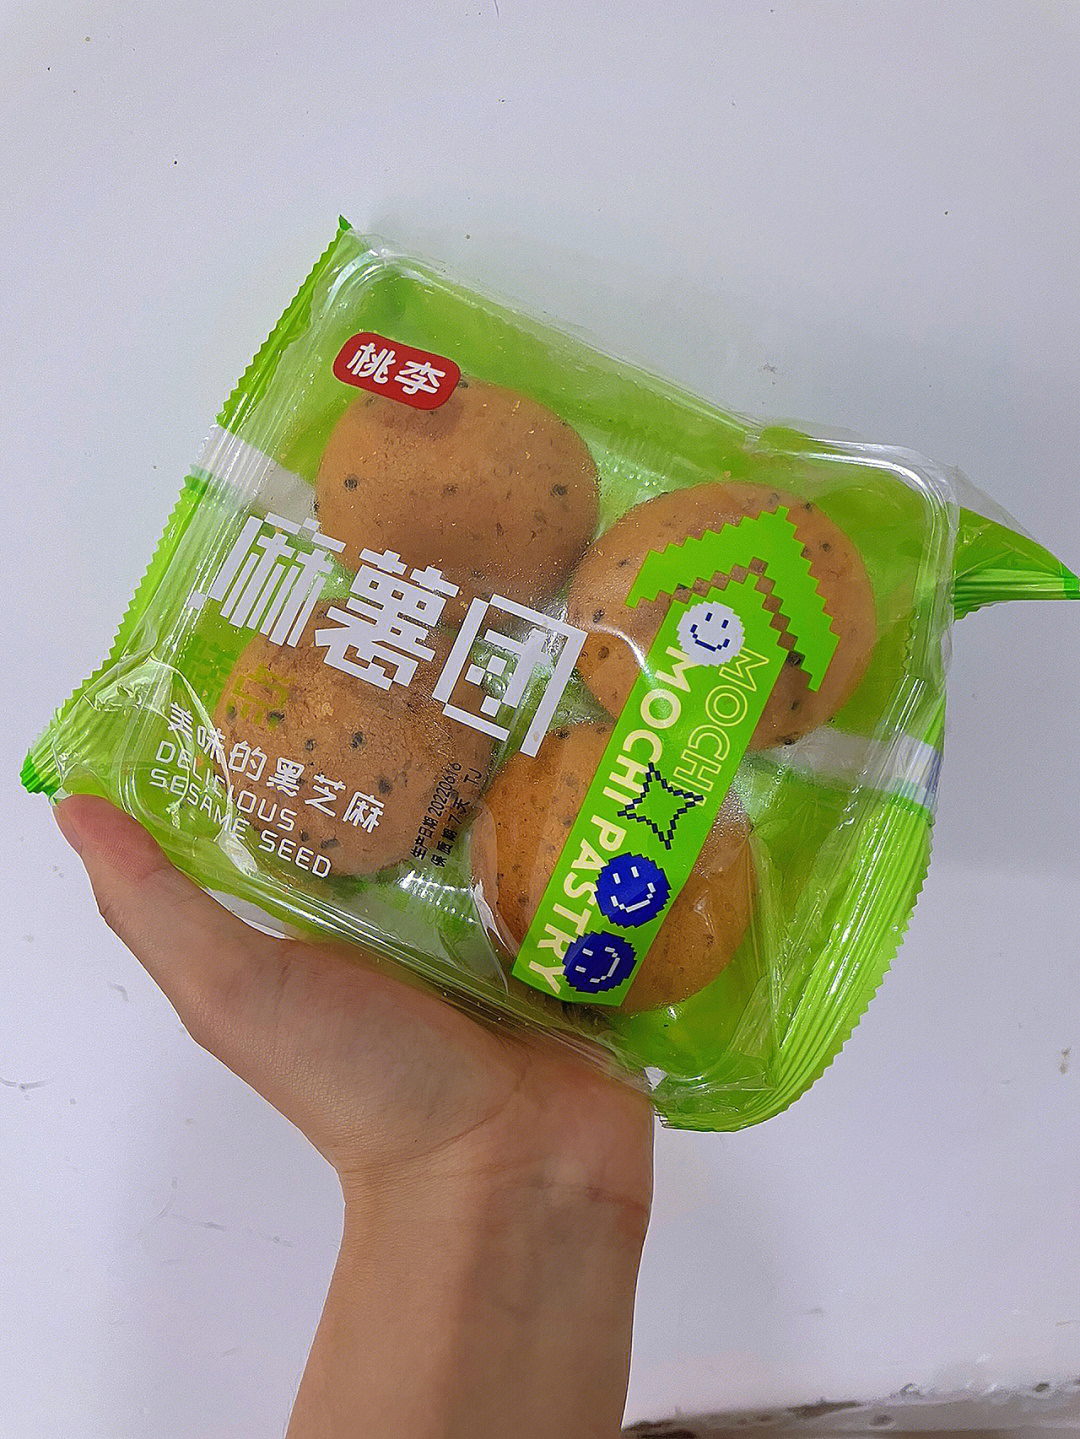 桃李麻薯面包图片